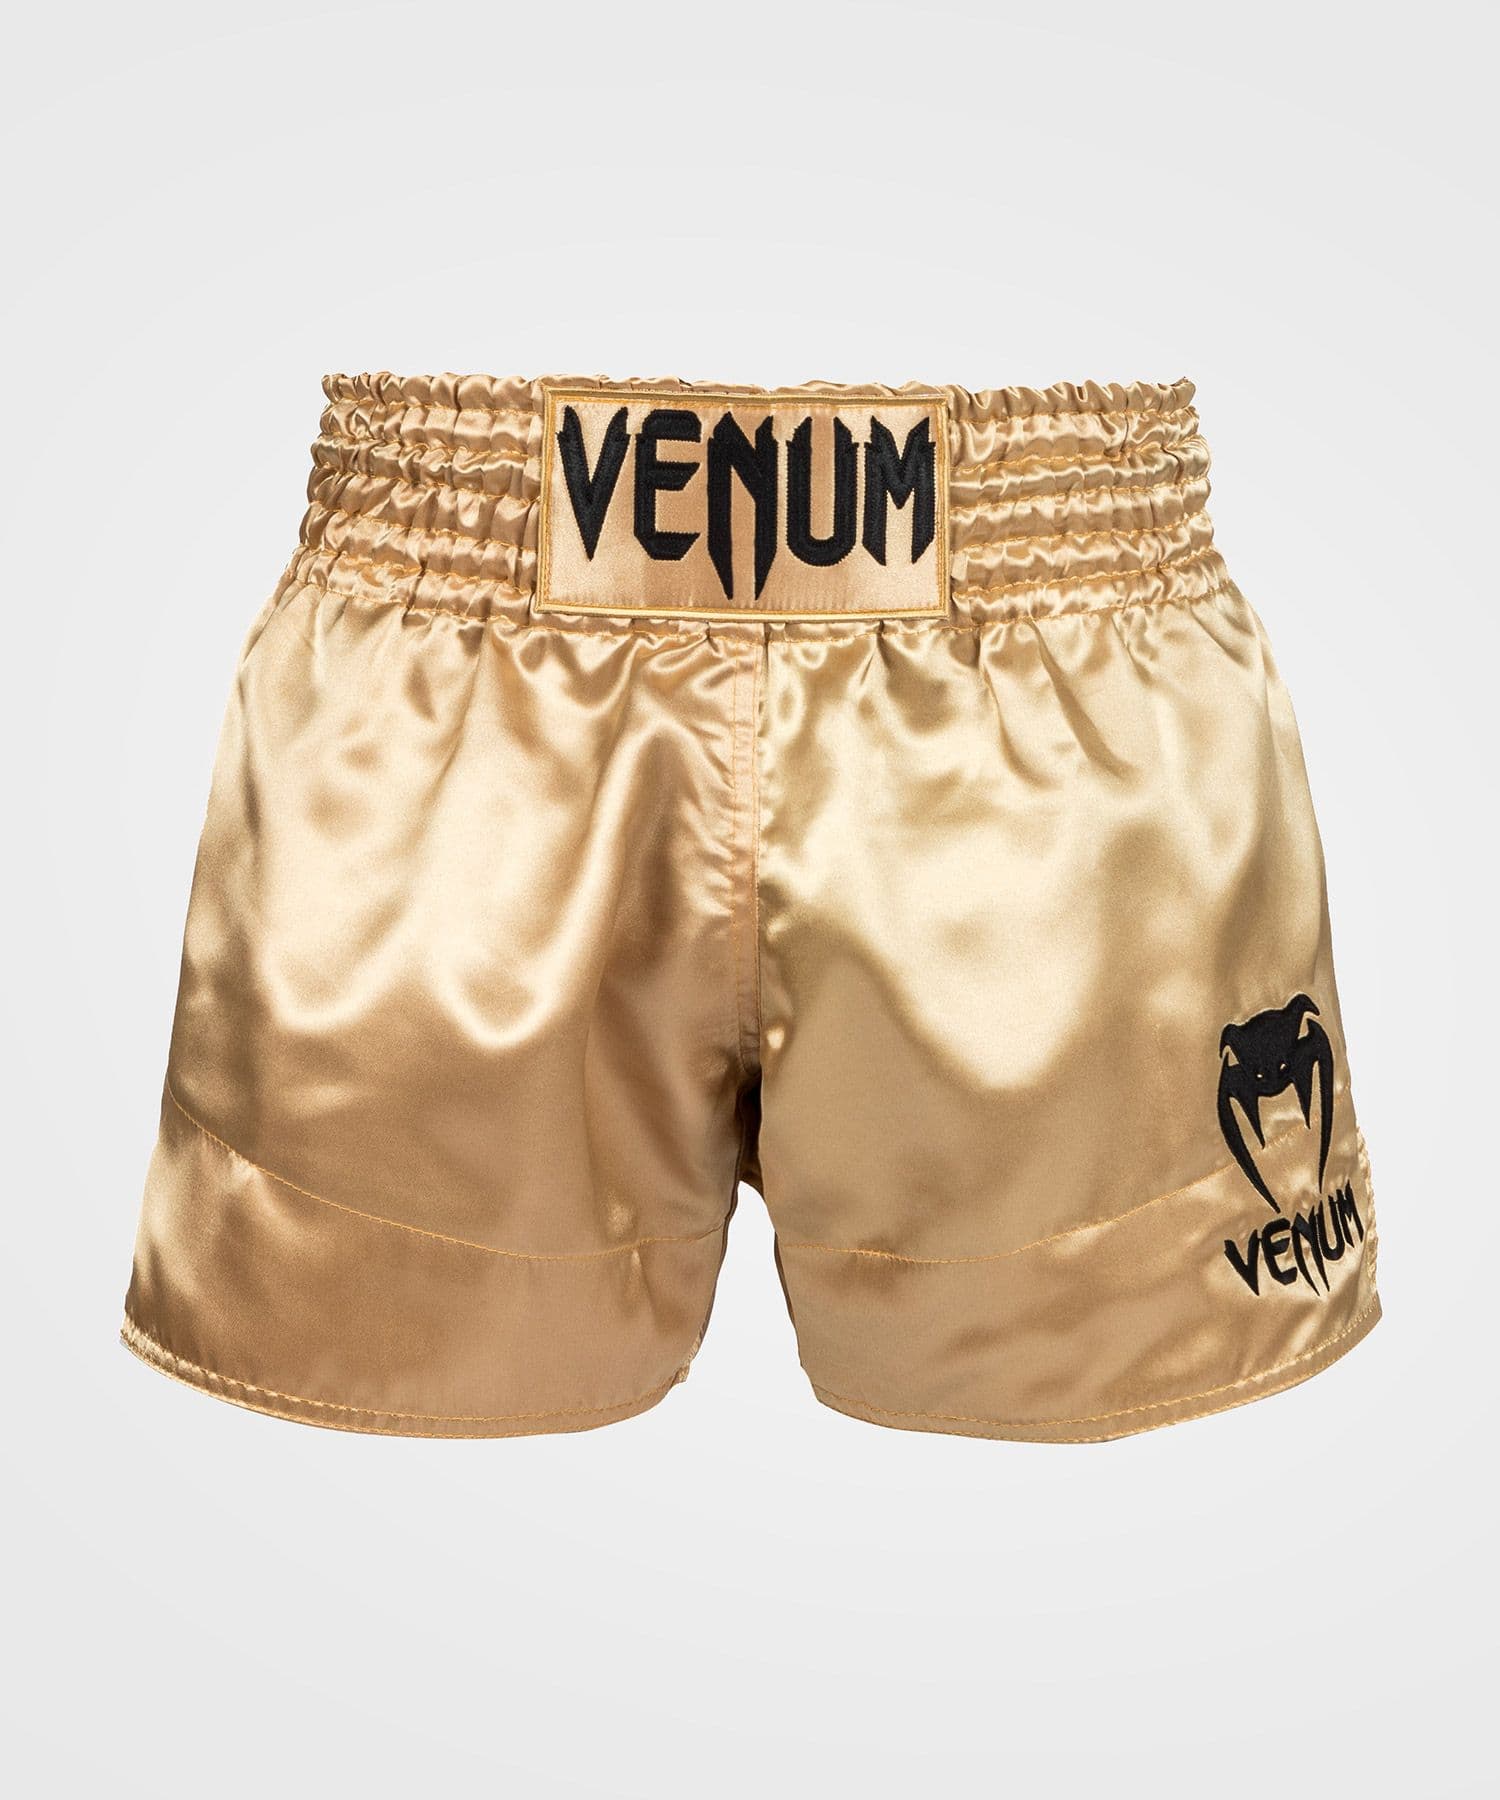 Short boxe thai venum - Cdiscount